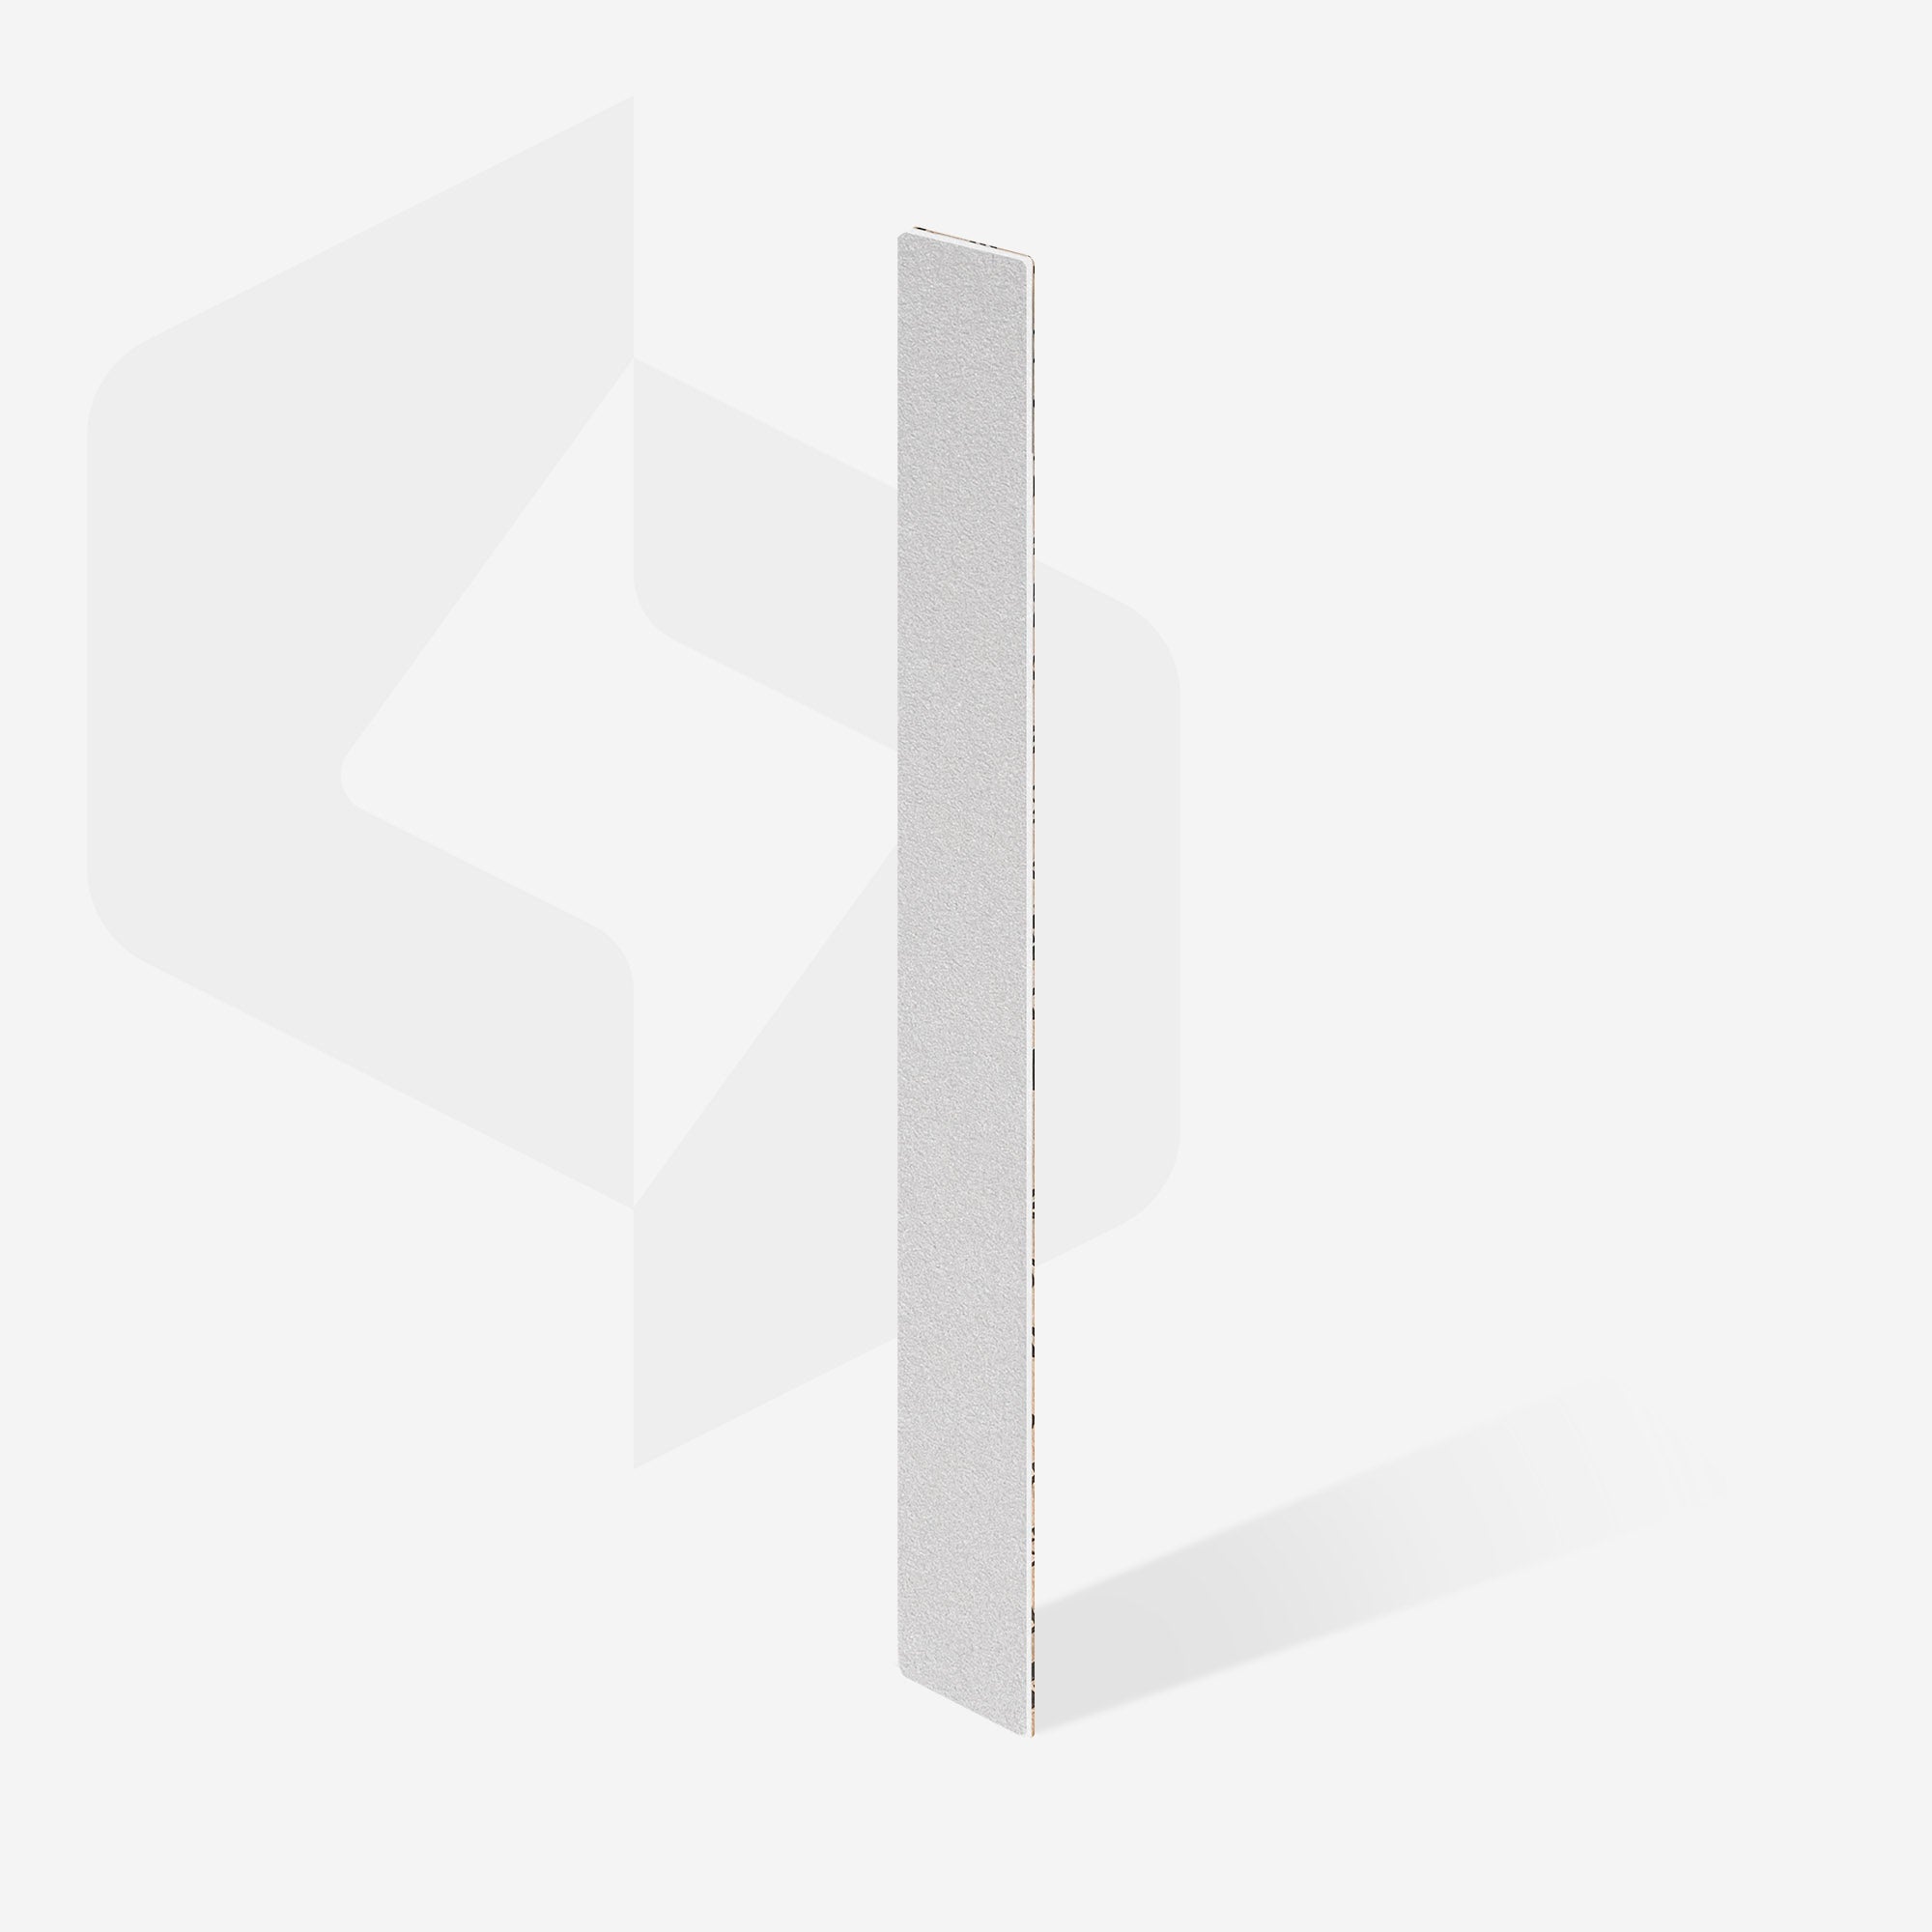 Bílé jednorázové papmAm pilníky (měkká pěnová vrstva) EXPERT 20 (25 ks)